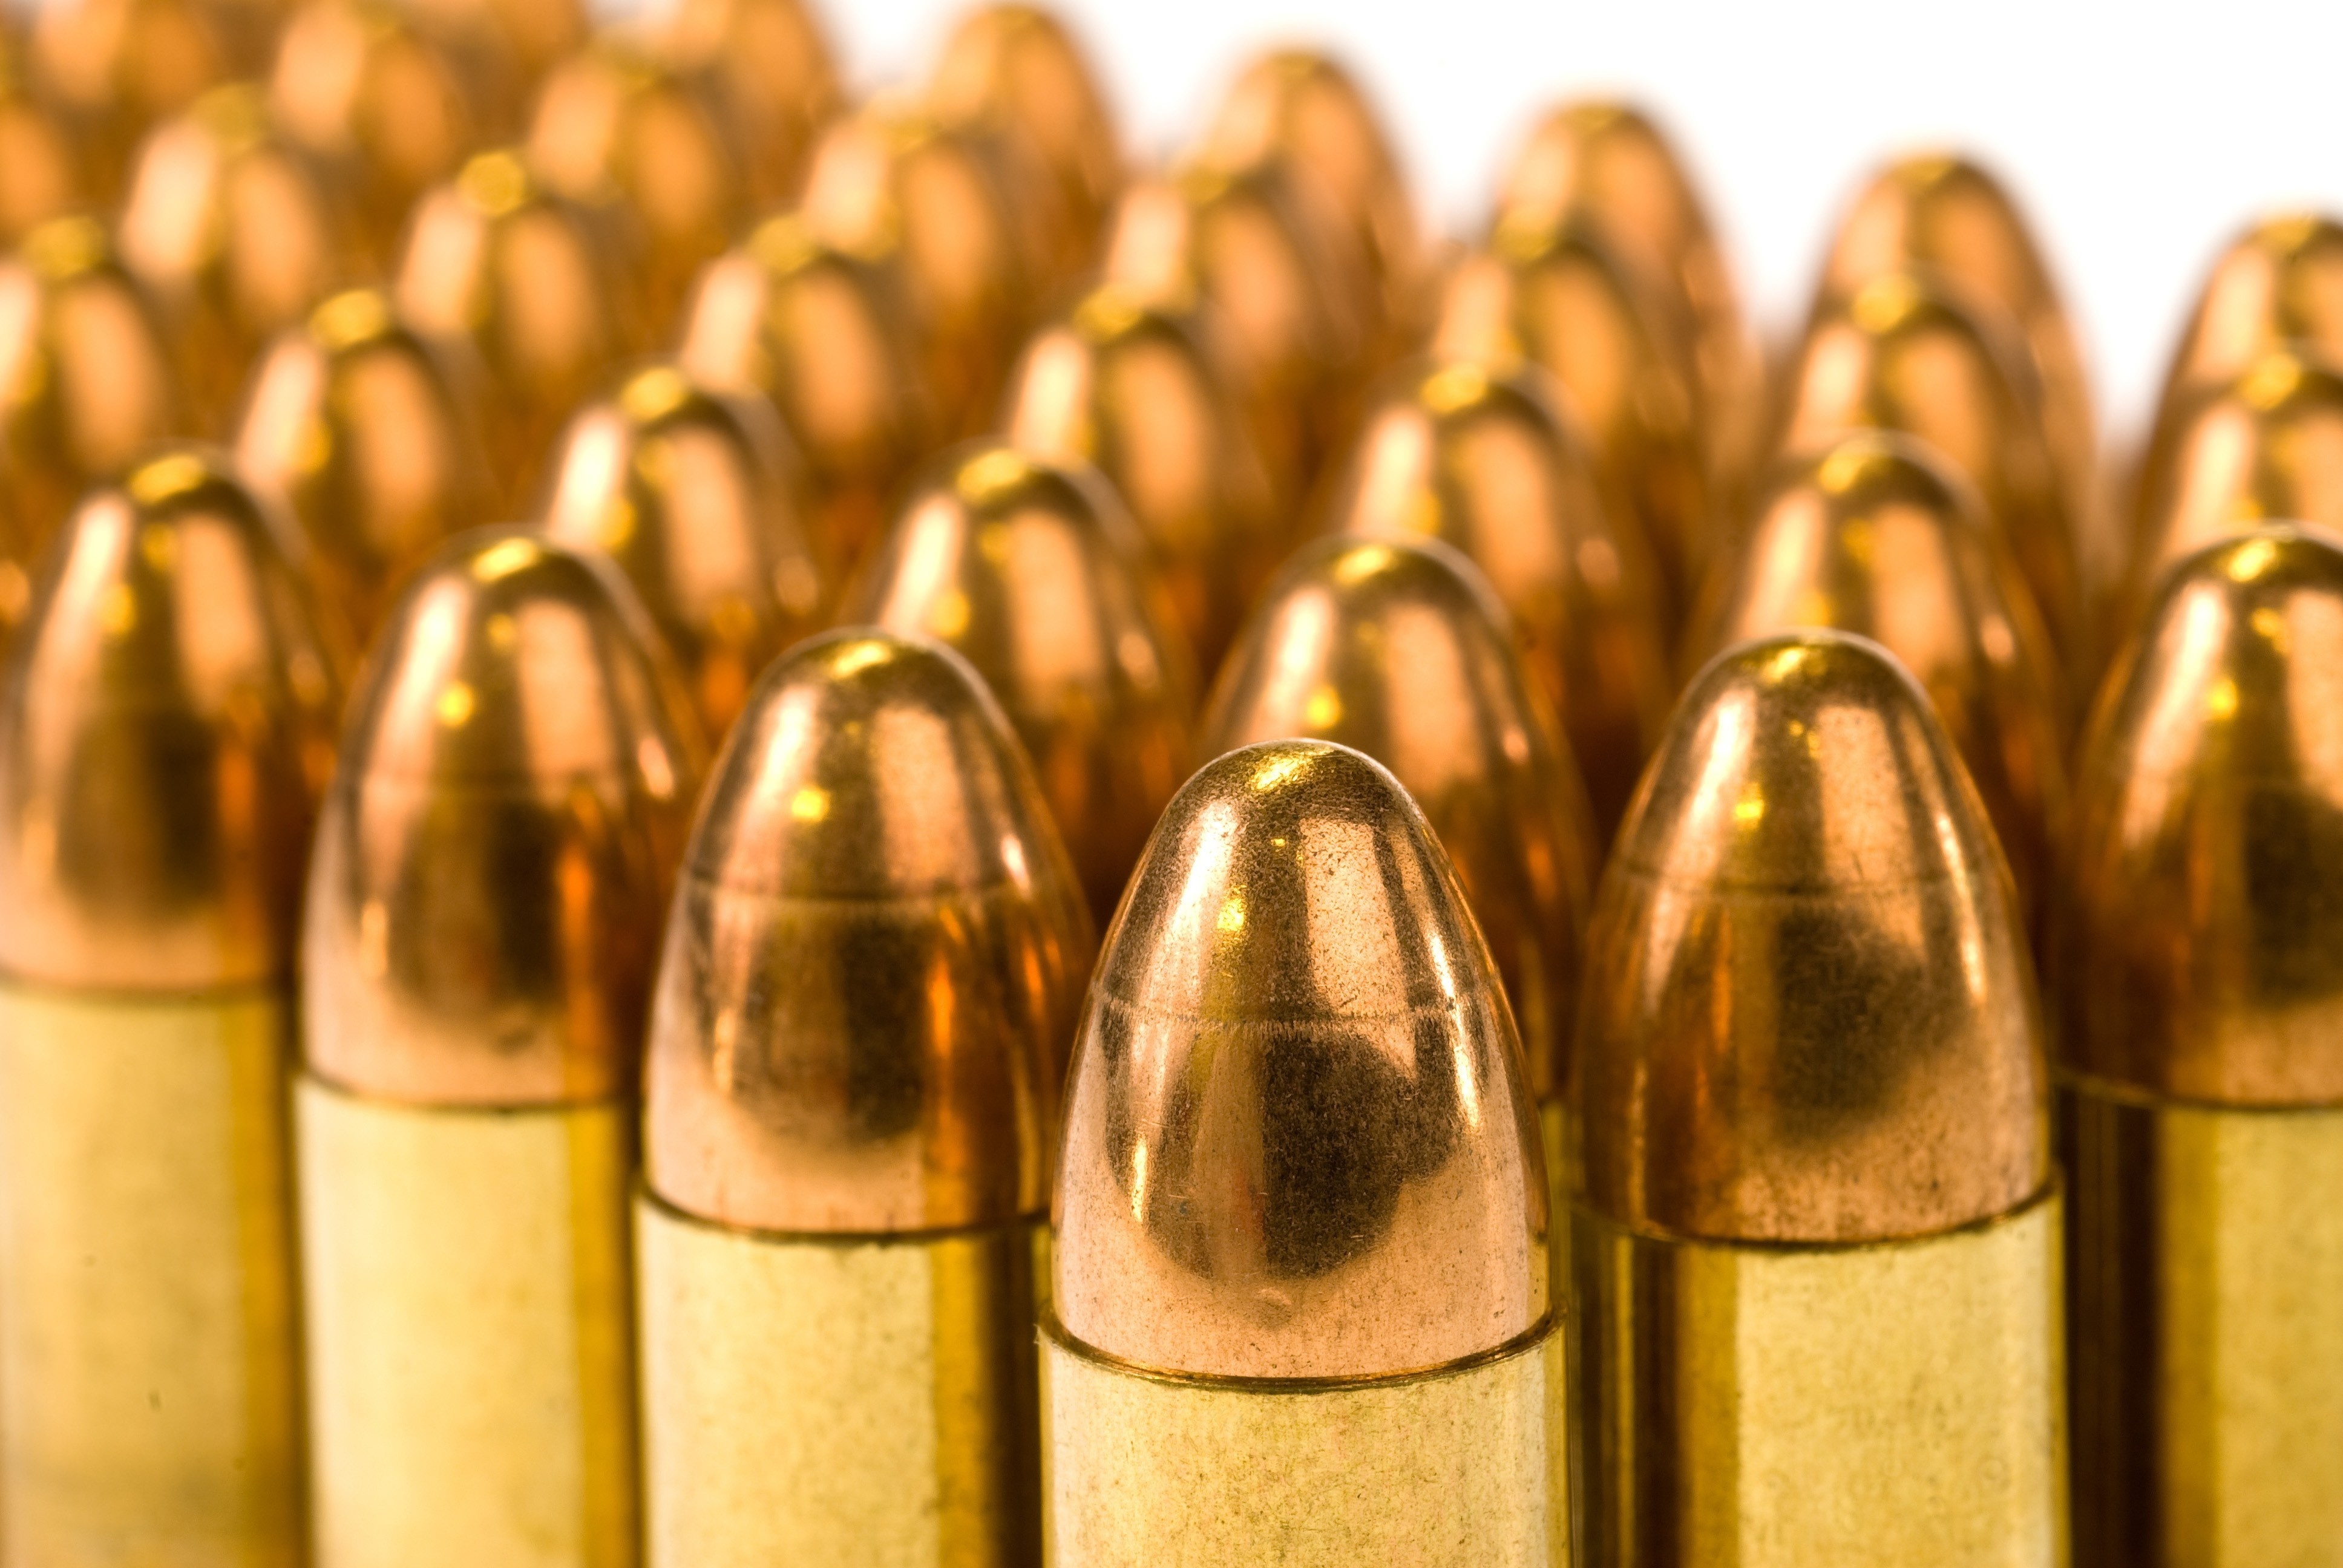 Ammunition clipart: Download wallpaper: ammunition